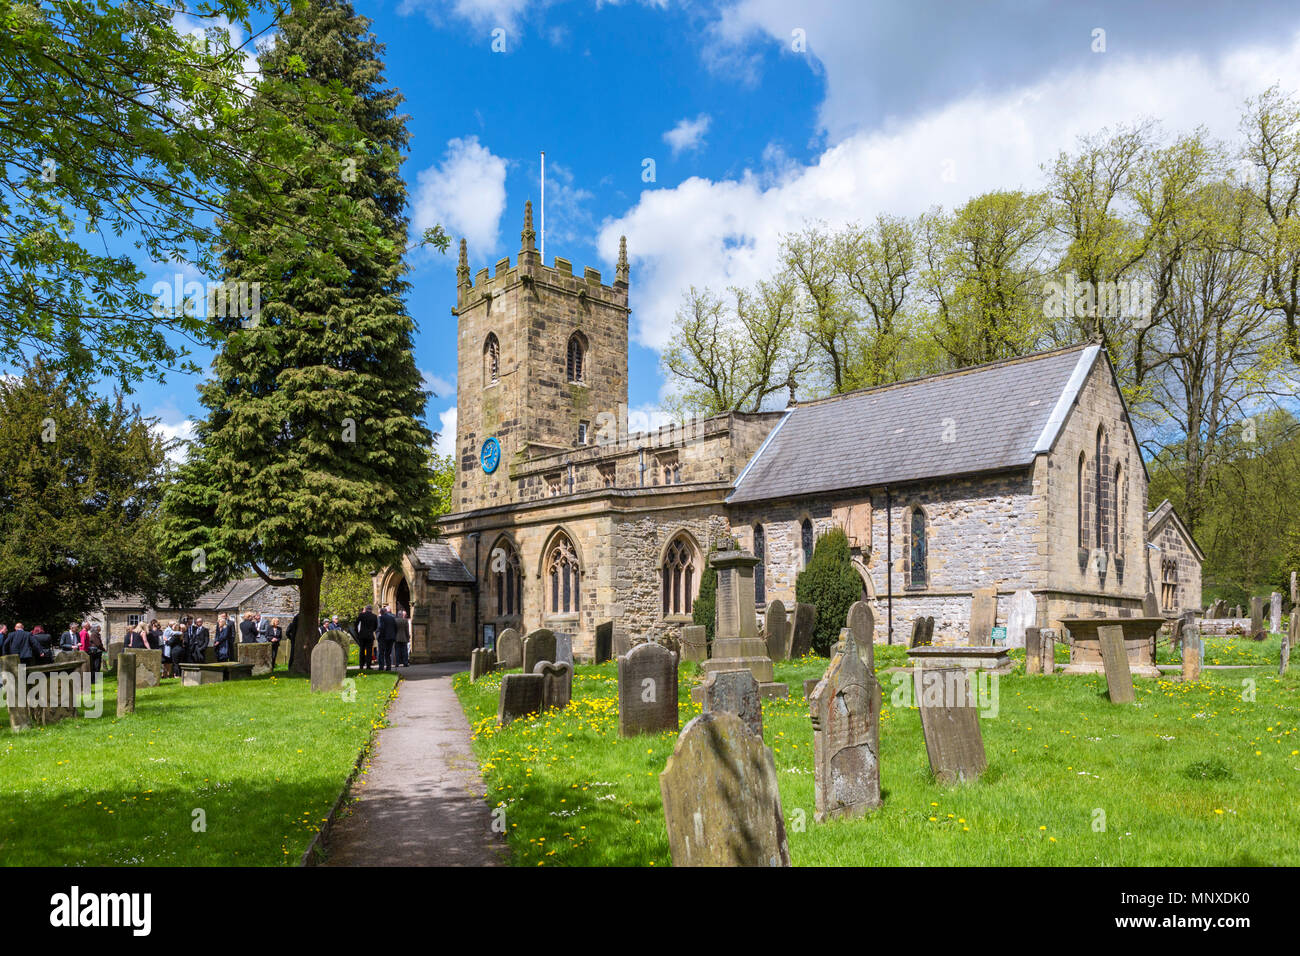 Die Pfarrkirche in Eyam, Peak District, Derbyshire, England, Großbritannien. Eyam wird manchmal als das Dorf der Pest bezeichnet. Stockfoto